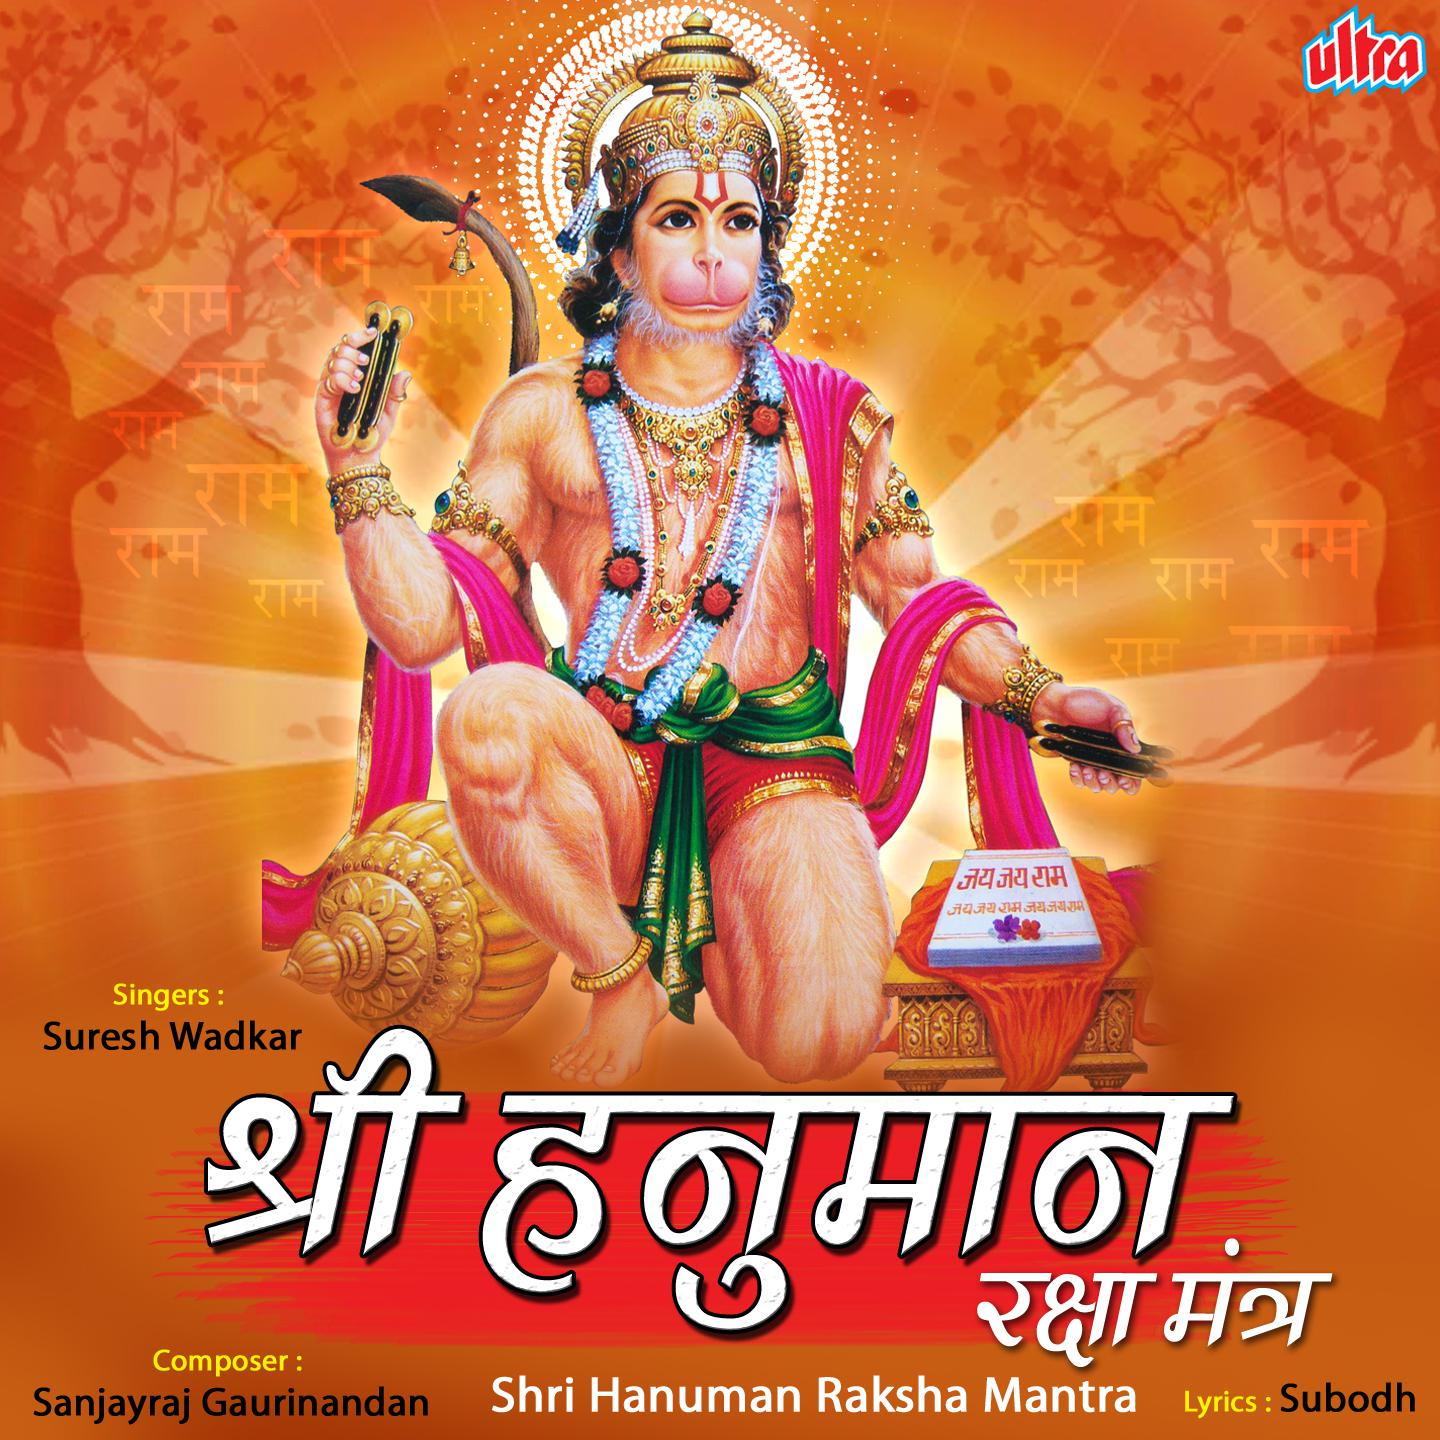 Shri Hanuman Raksha Mantra